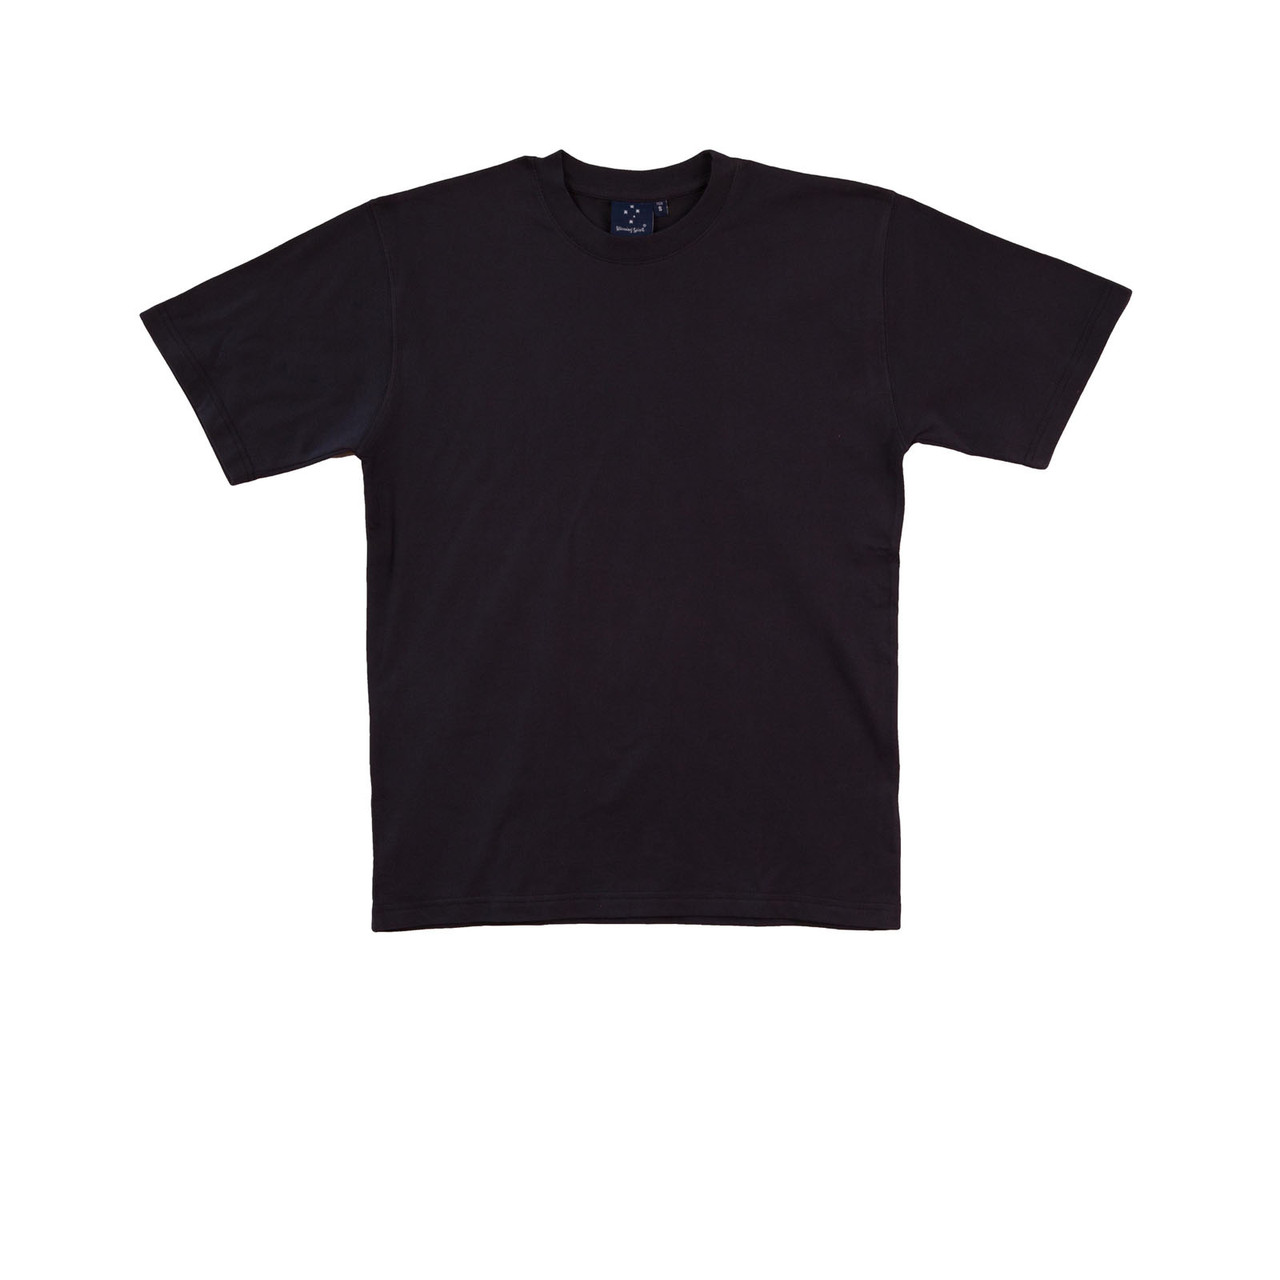 Unisex Premium Cotton Traditional Tshirt | Shop Plain Tees Online Wholesale